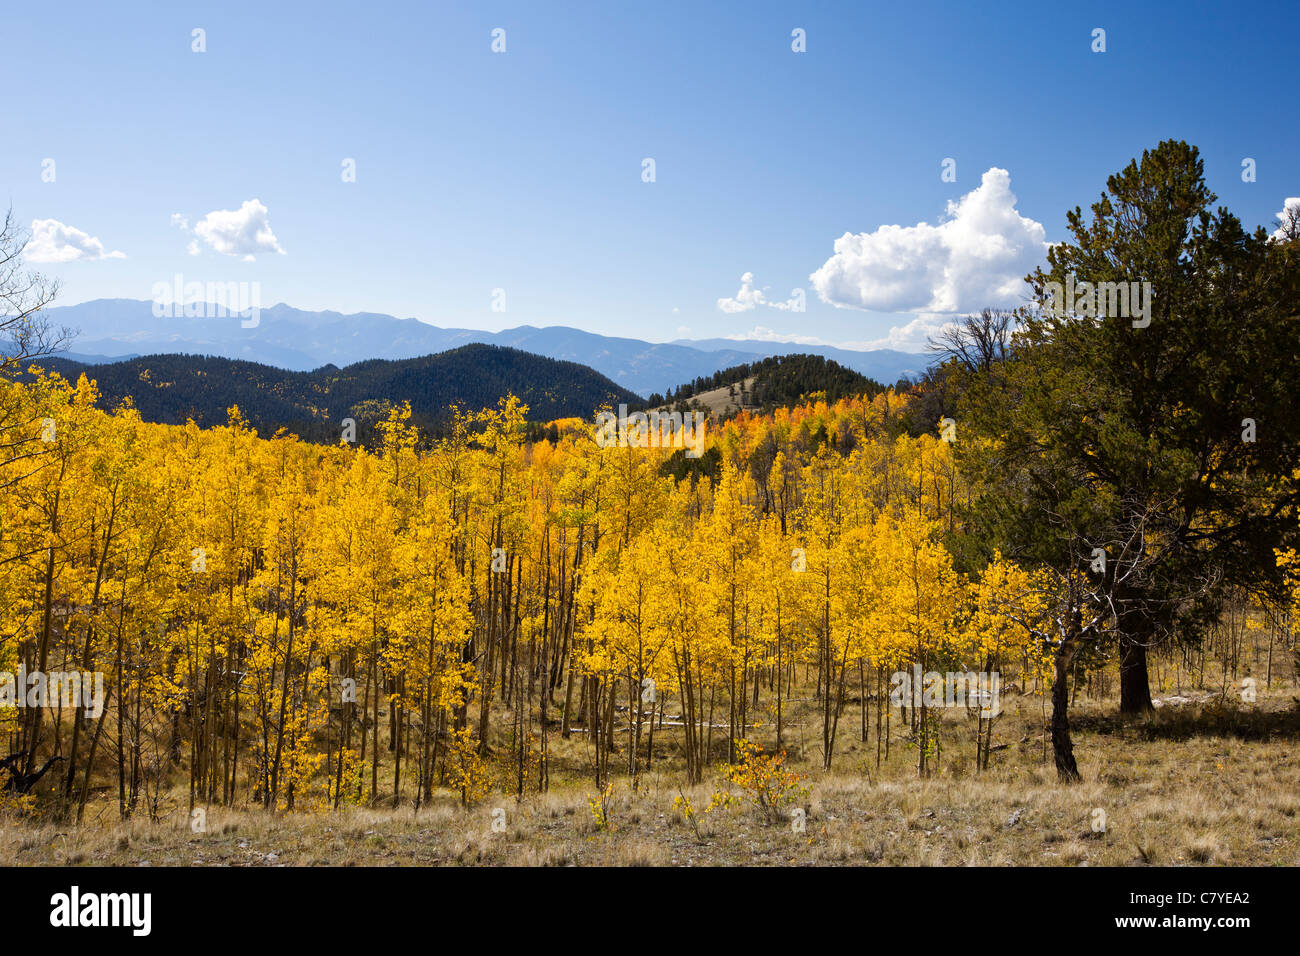 Arbre feuilles de tremble dans la couleur d'or, Aspen Ridge, CR 185, San Isabel National Forest, Colorado, USA Banque D'Images